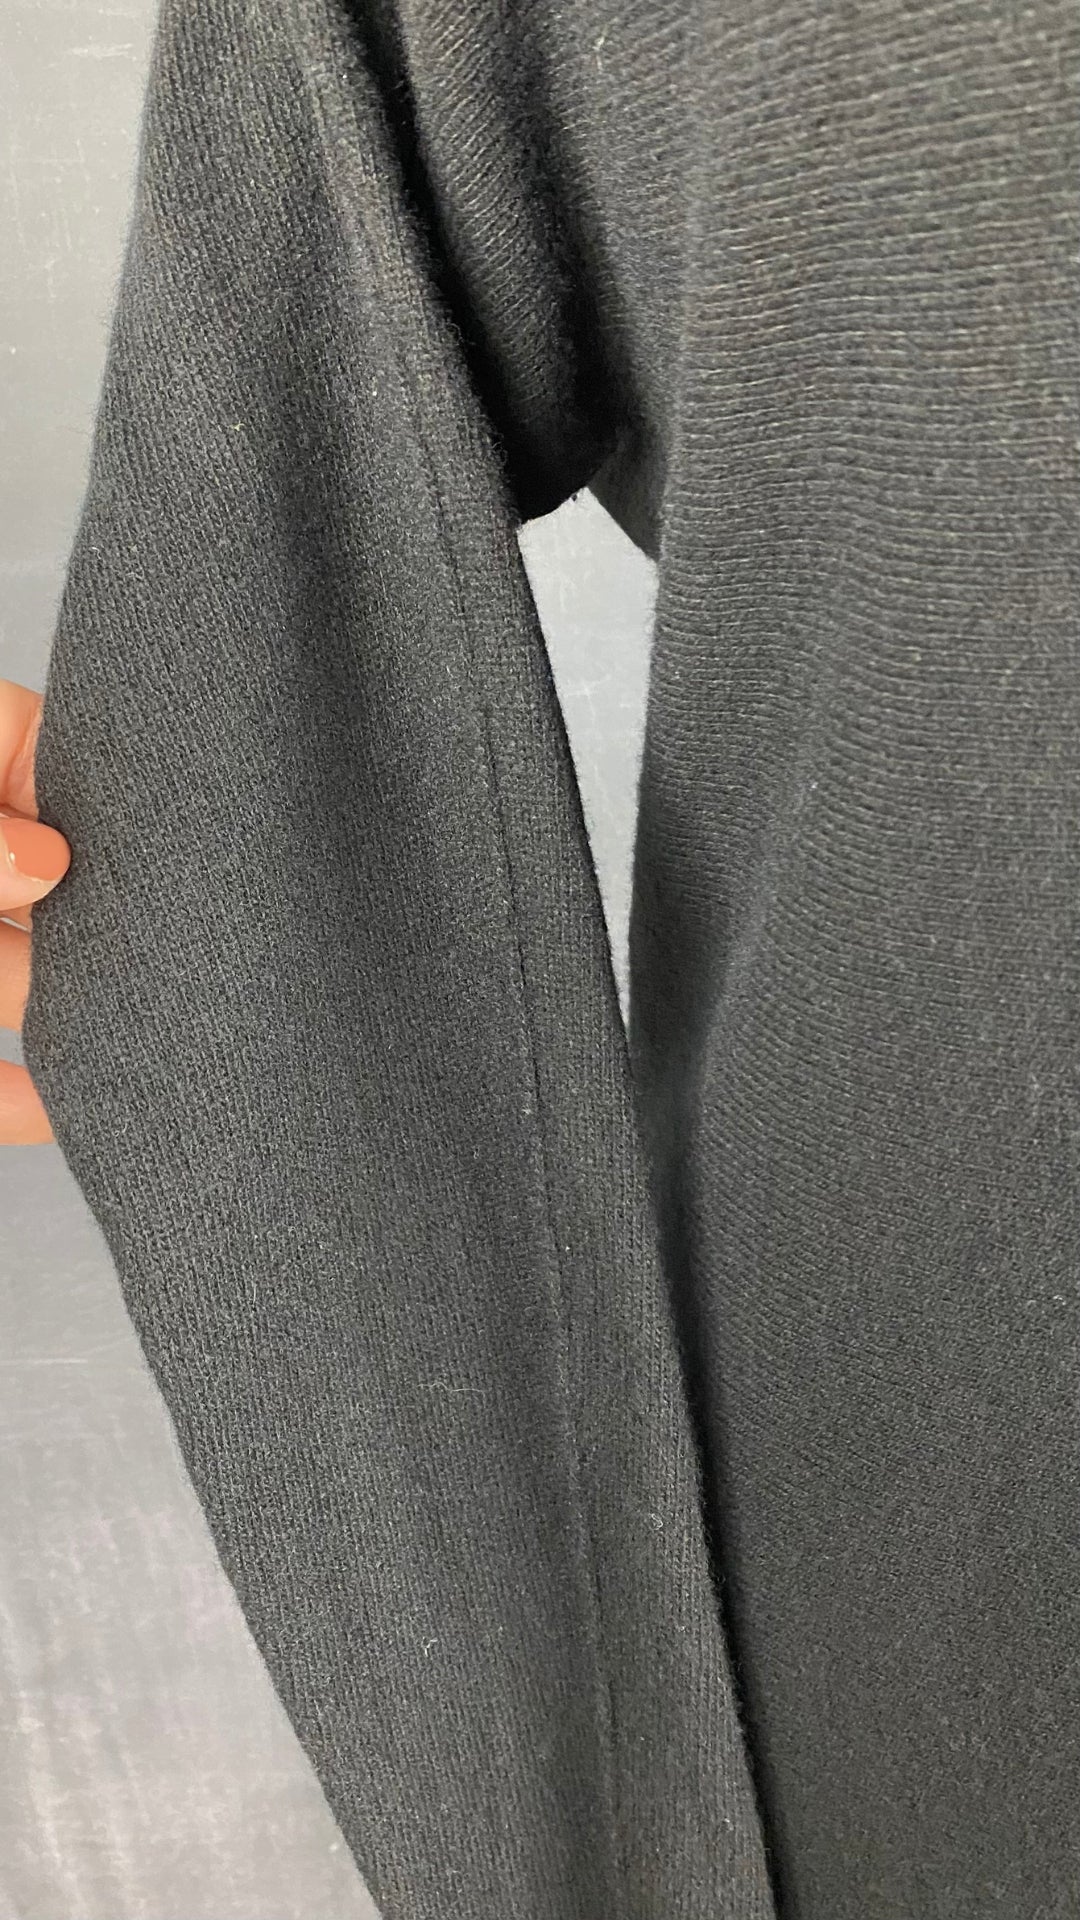 Robe tunique en tricot noir La fée Maraboutée, taille small (1). Vue de la manche.